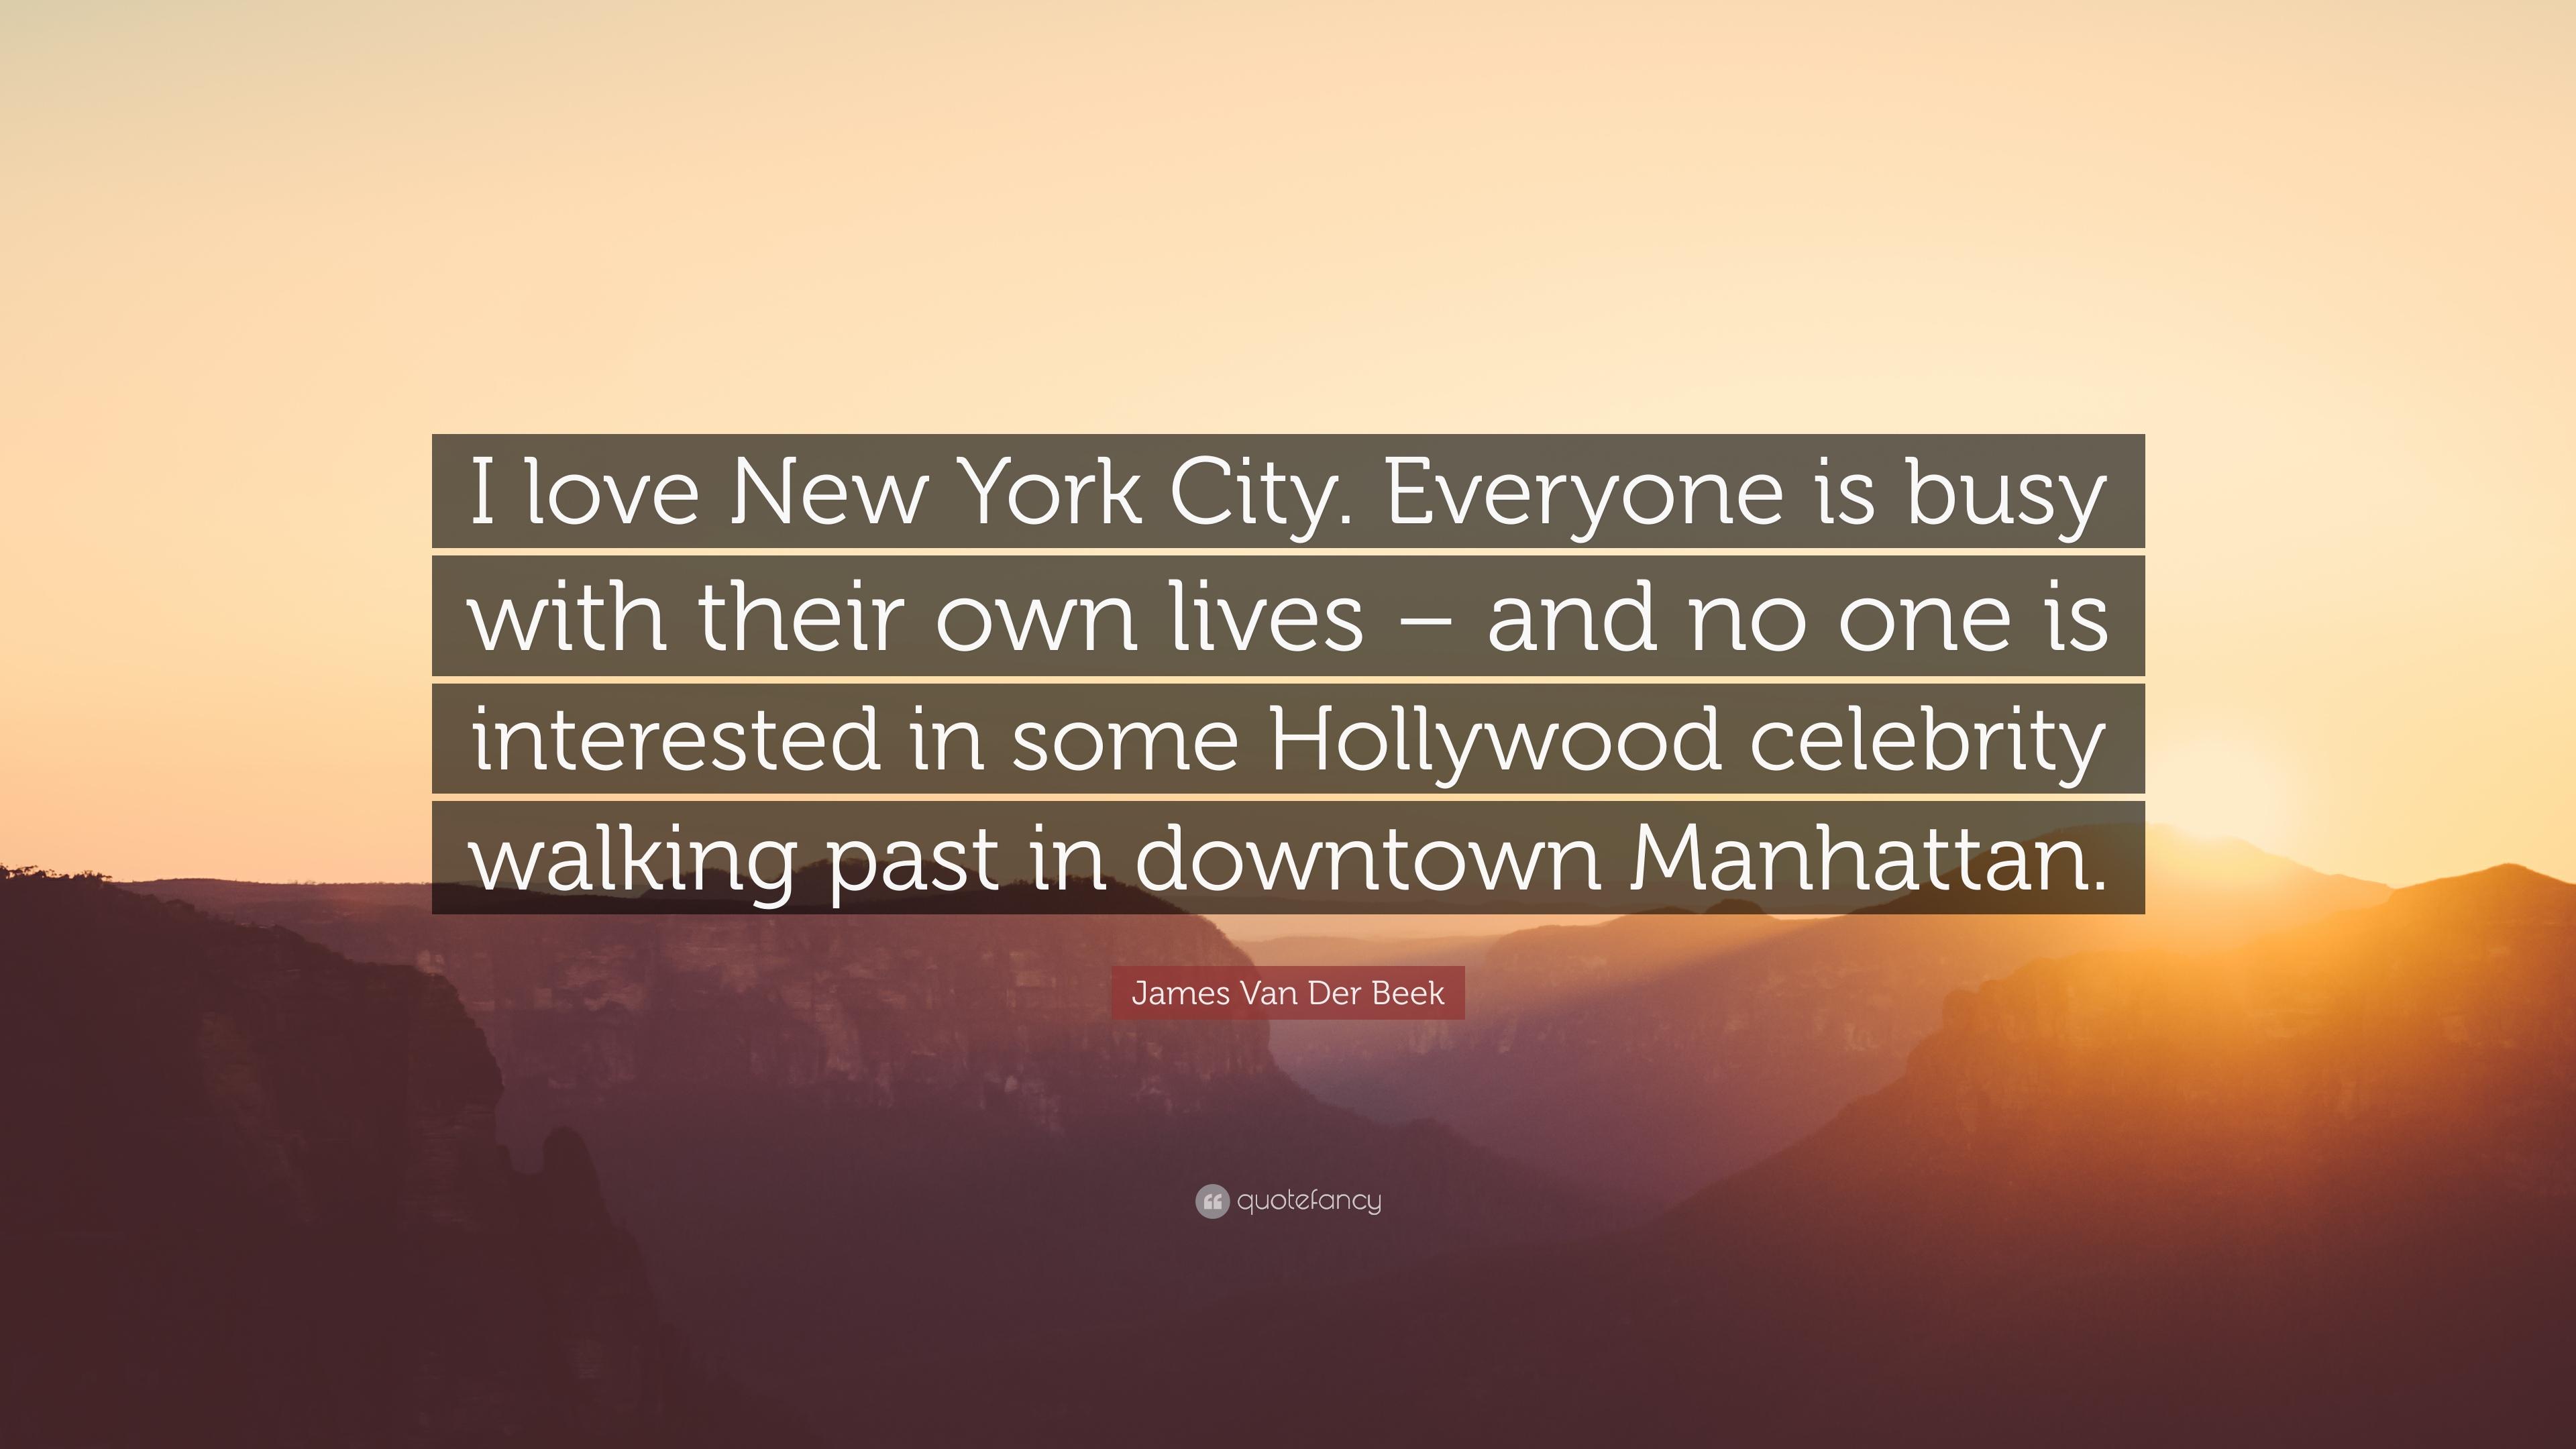 James Van Der Beek Quote: “I love New York City. Everyone is